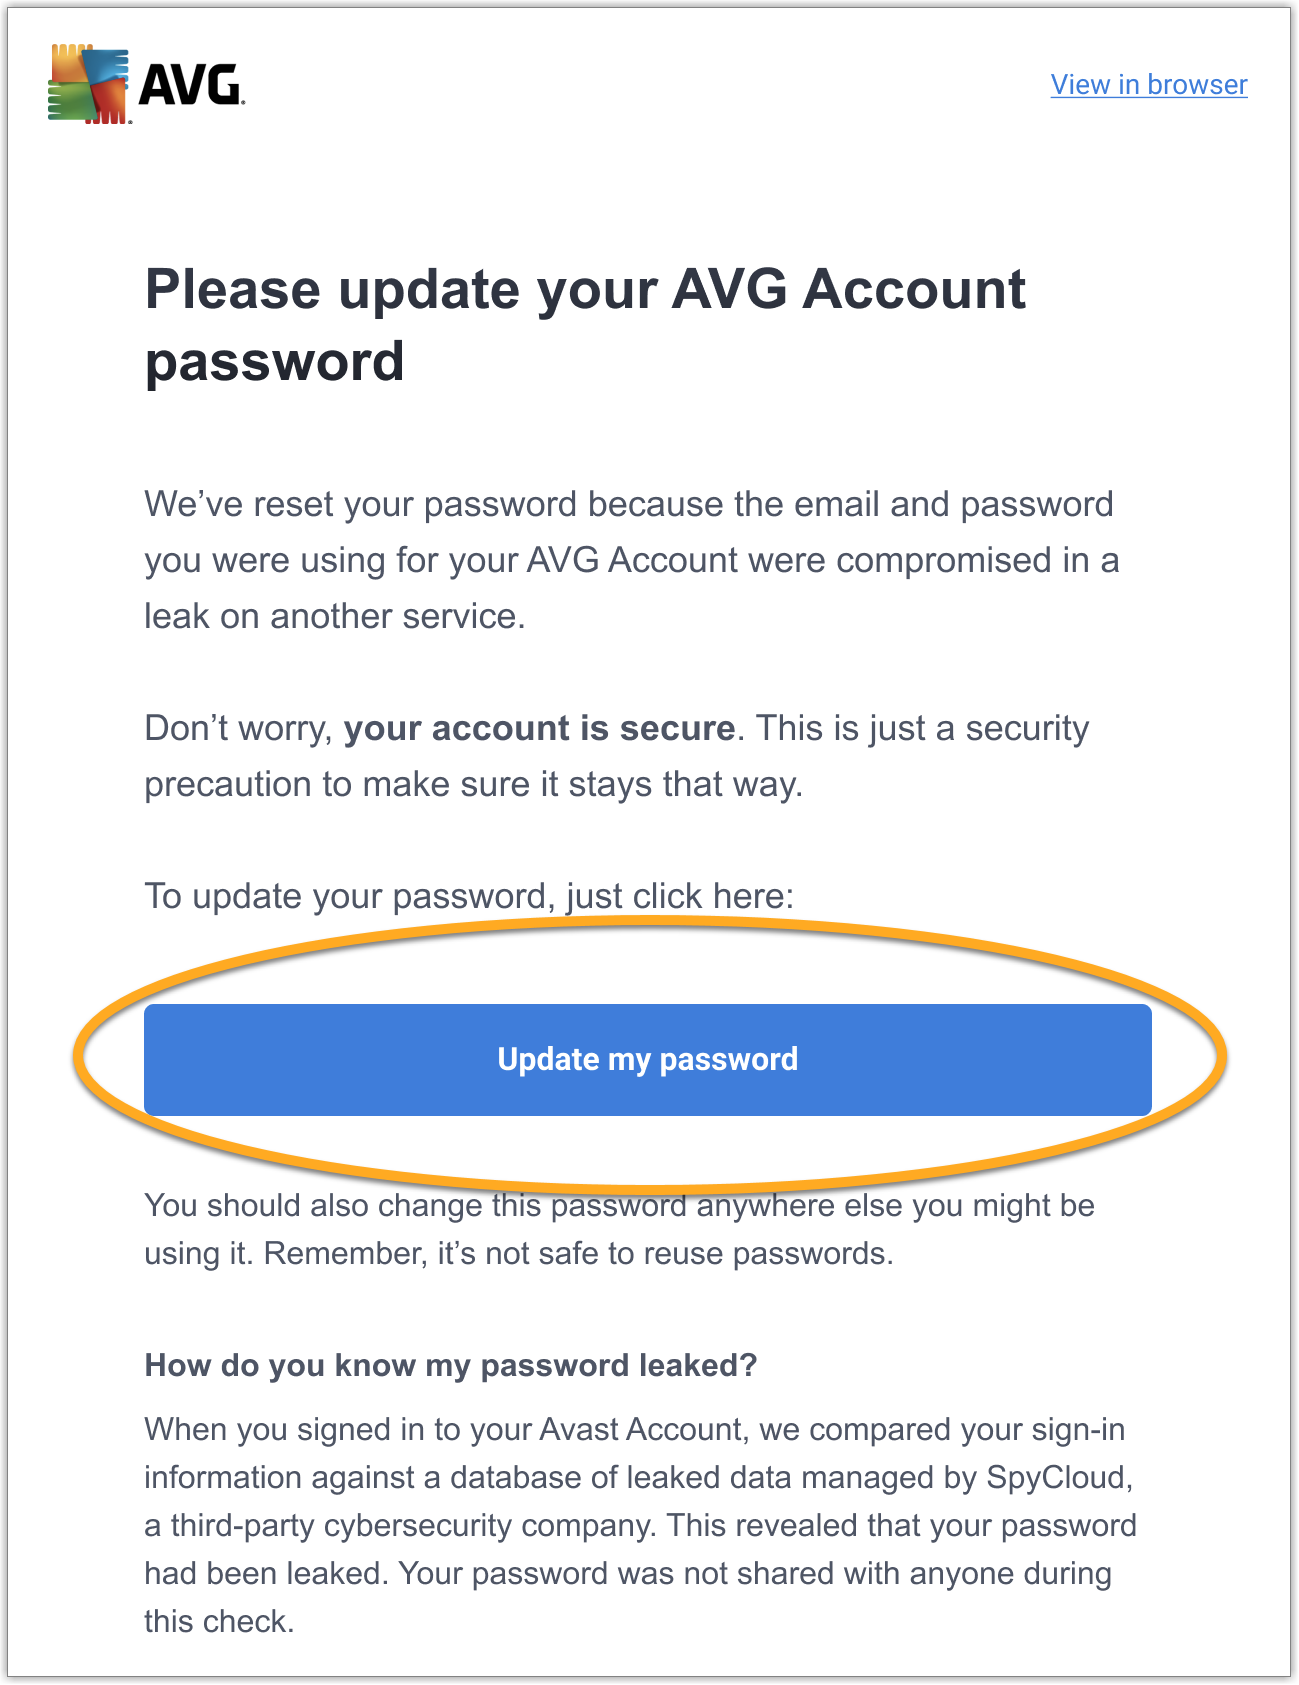 Come trovo la mia password AVG?